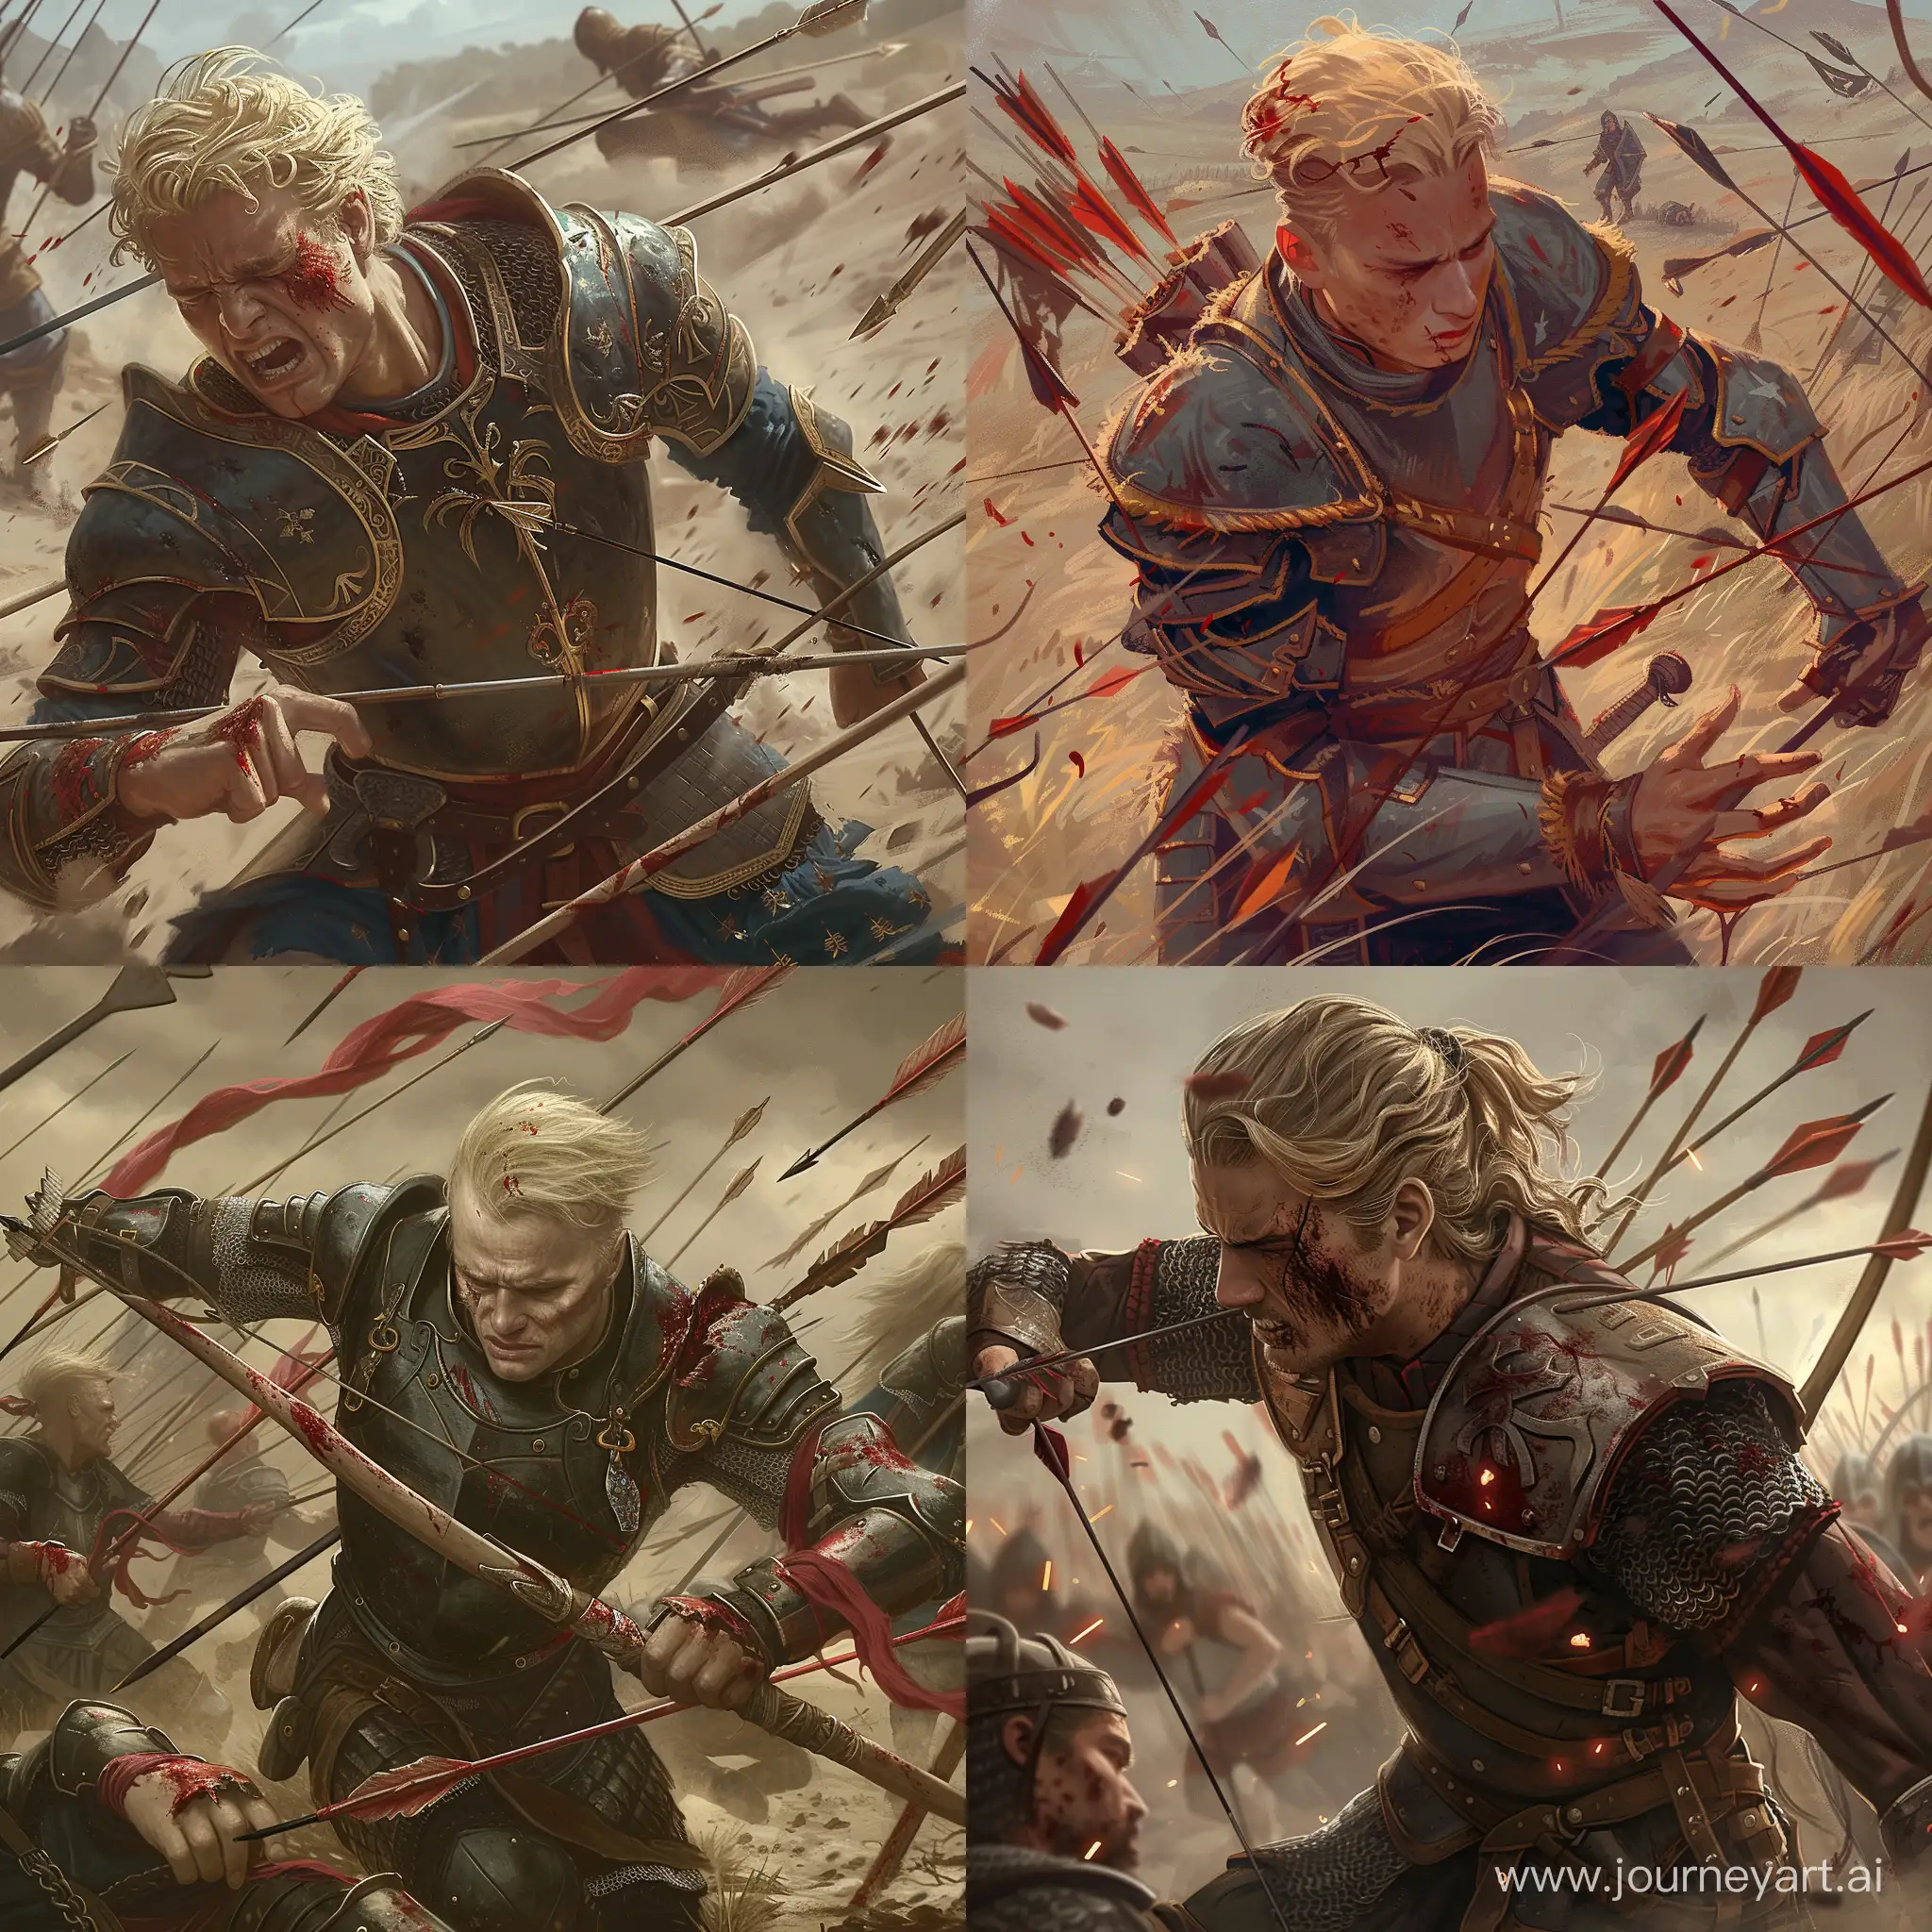 Brave-Warrior-Struggling-in-Battle-Digital-Art